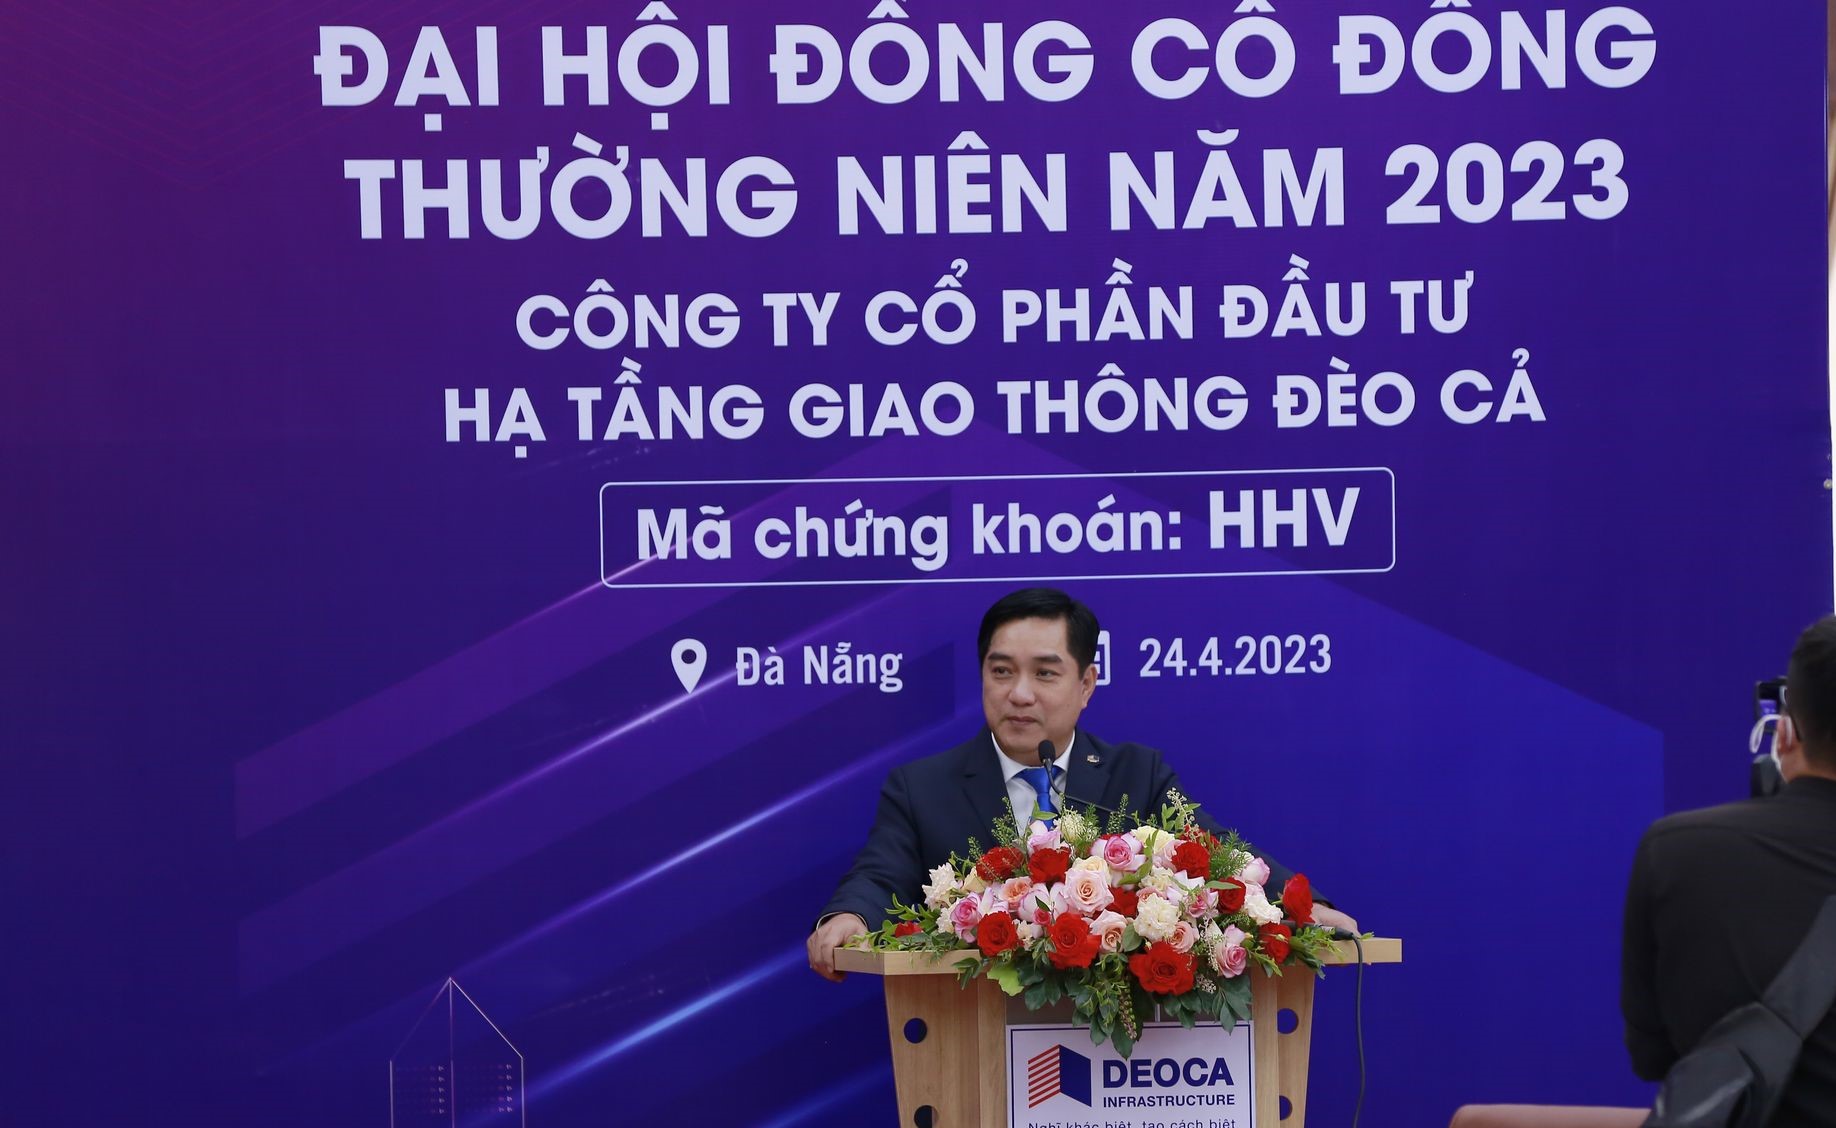 Ông Hồ Minh Hoàng, Chủ tịch HĐQT HHV nhấn mạnh sự kiên định với chiến lược “Tăng trưởng tập trung, đi trong vòng tròn năng lực của mình”.